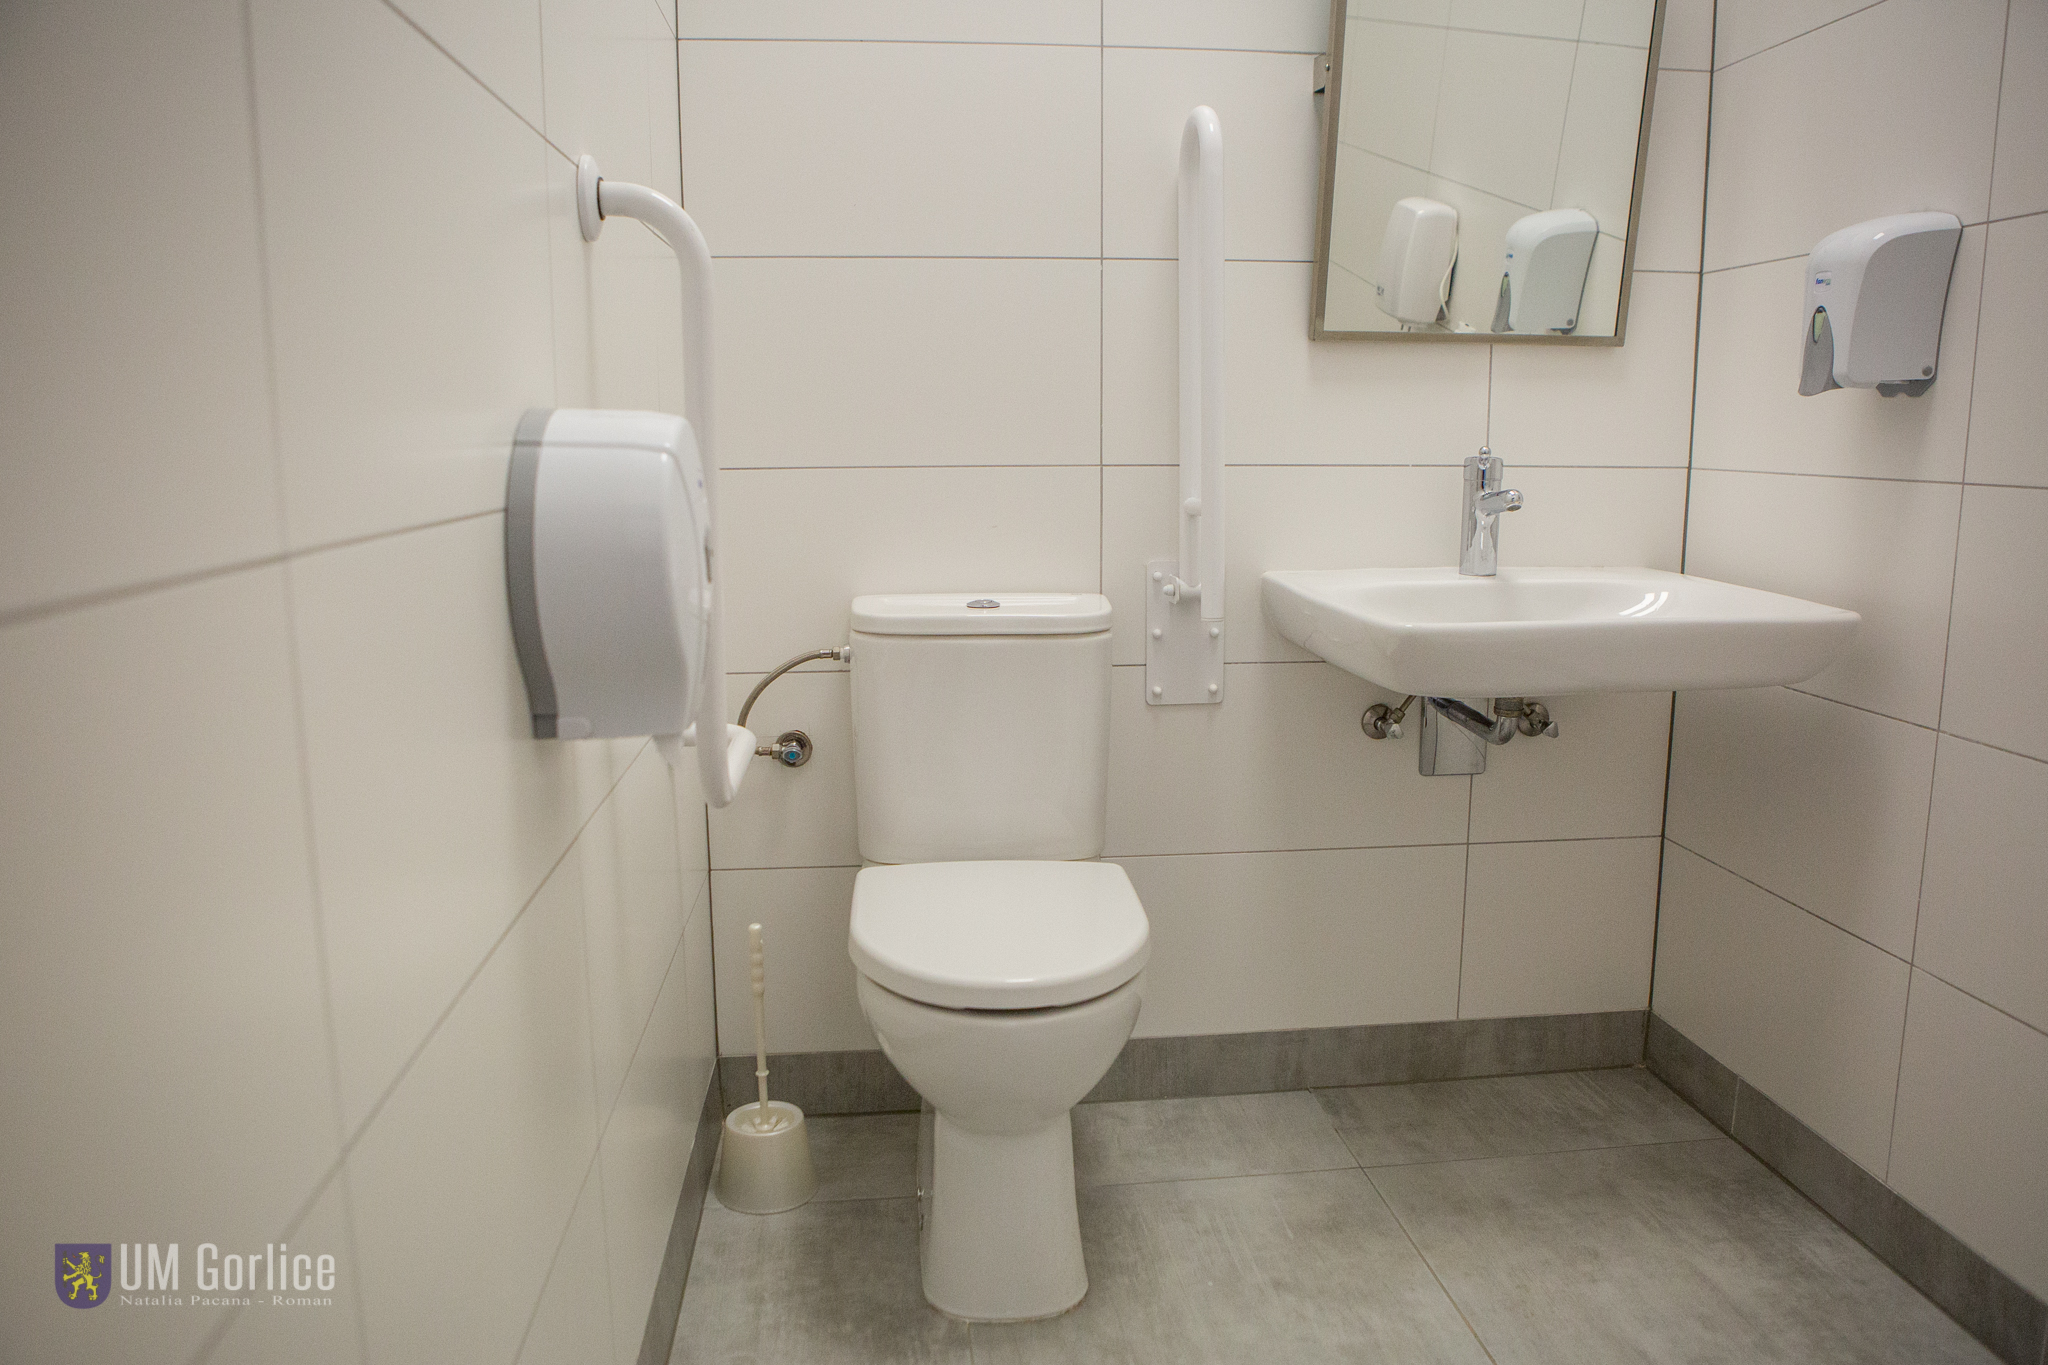 Toalety przystosowane do potrzeb osób z niepelnosprawnością w Urzędzie Miejskim w Gorlicach